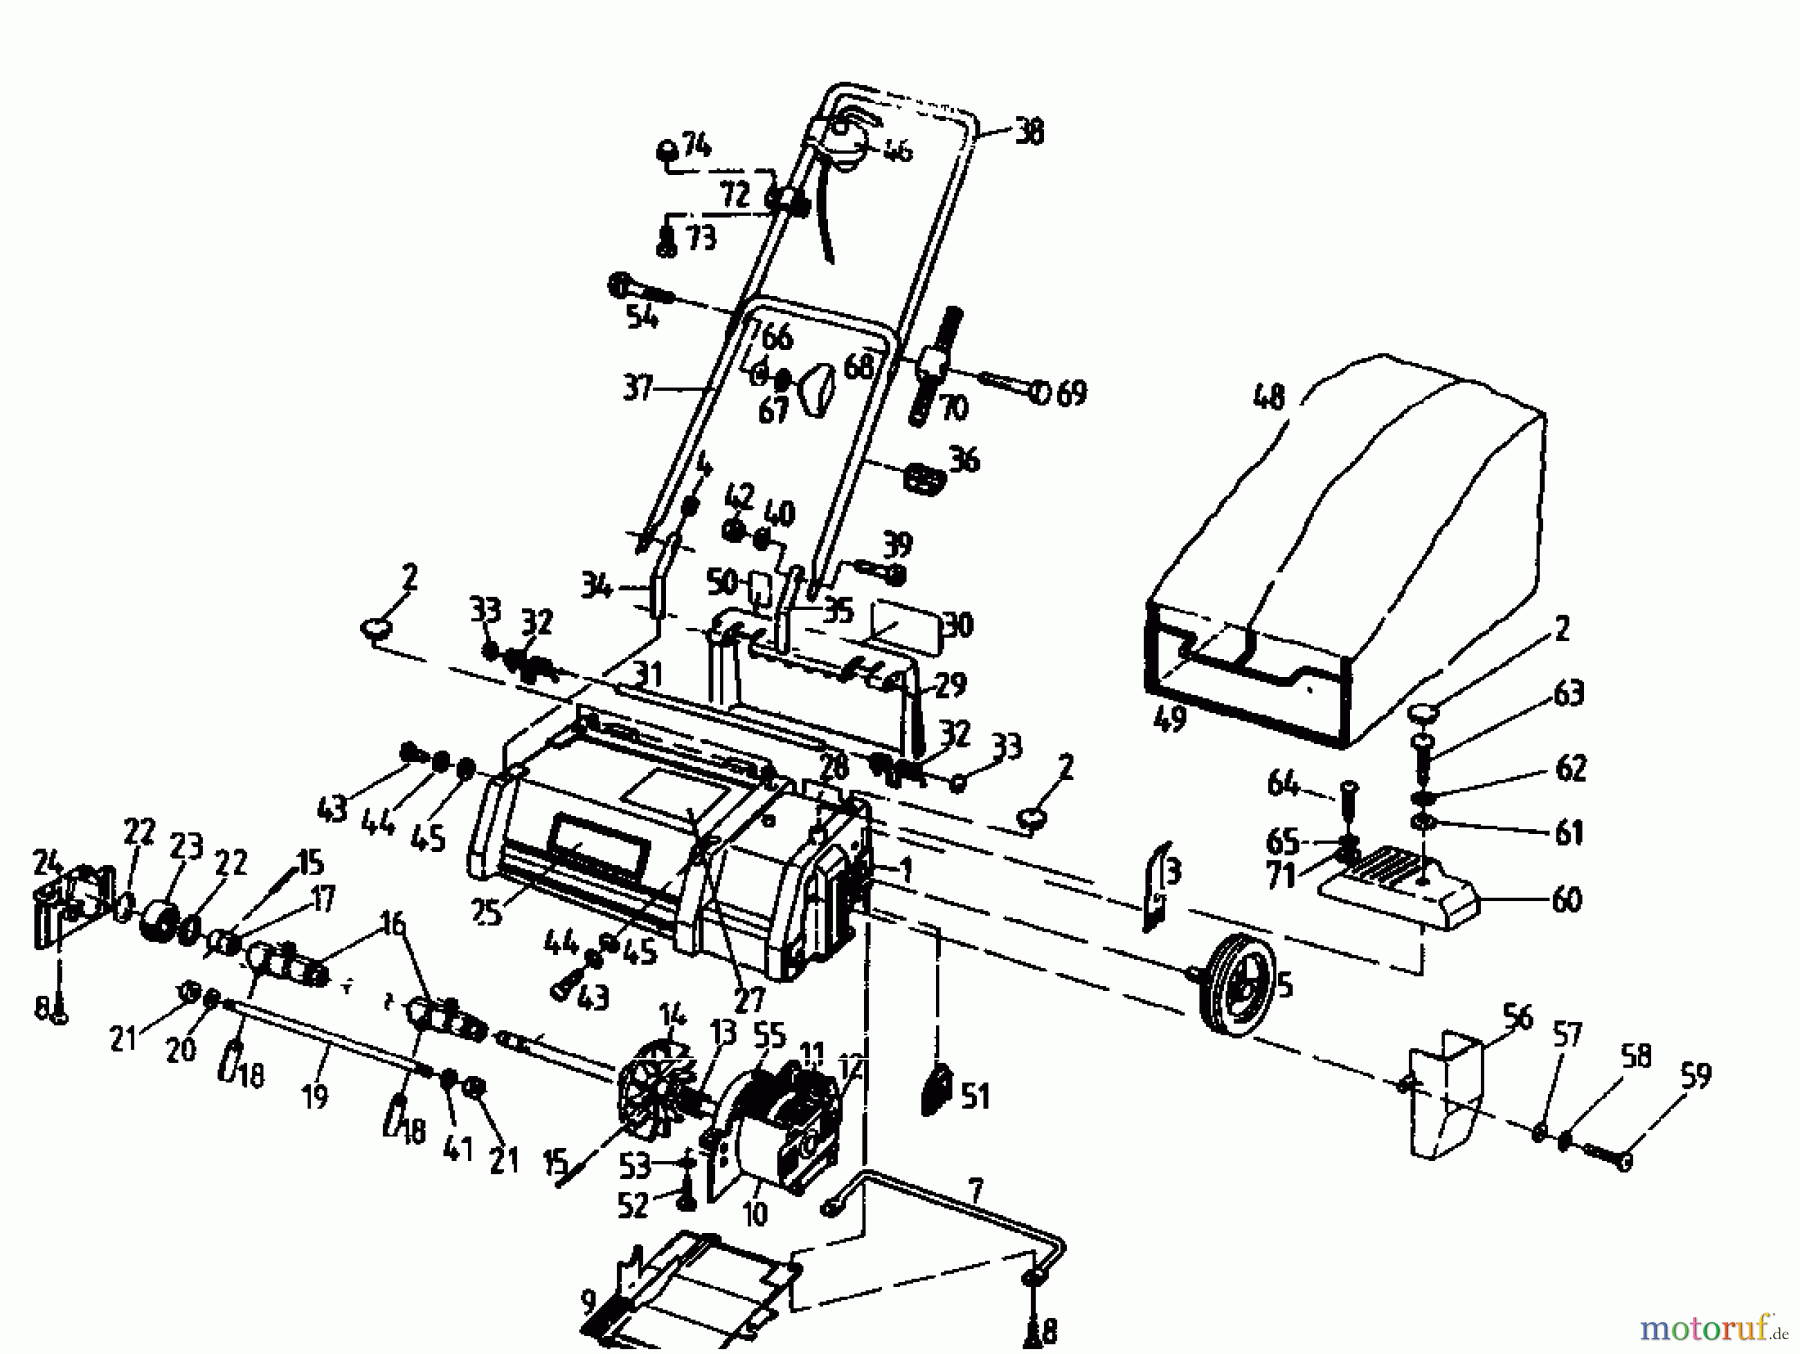  MTD Electric verticutter DELUXE 28 E 180-0113  (1990) Basic machine